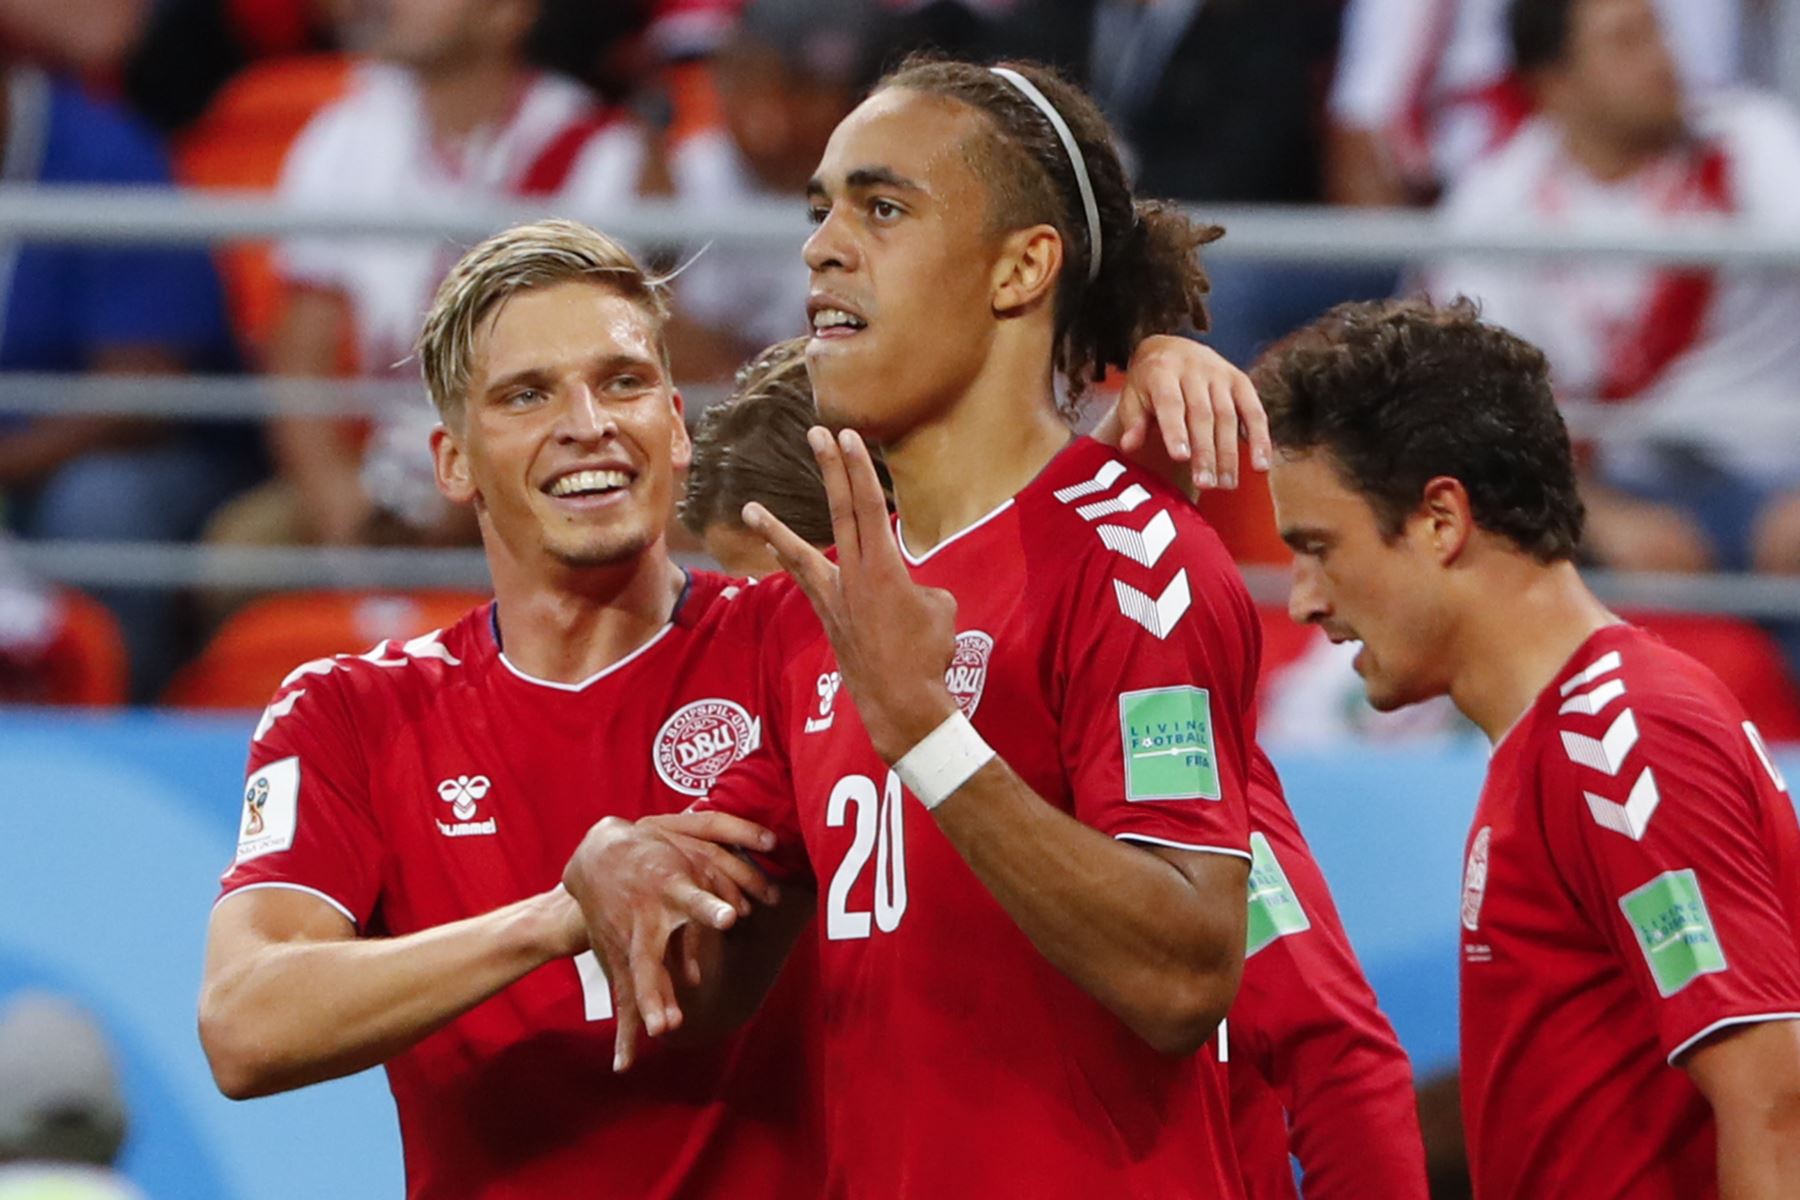 El delantero danés Yussuf Poulsen (C) celebra con sus compañeros después de anotar un gol durante el partido de fútbol del Grupo C de la Copa Mundial Rusia 2018 entre Perú y Dinamarca en el Mordovia Arena en Saransk el 16 de junio de 2018.
 Foto: AFP